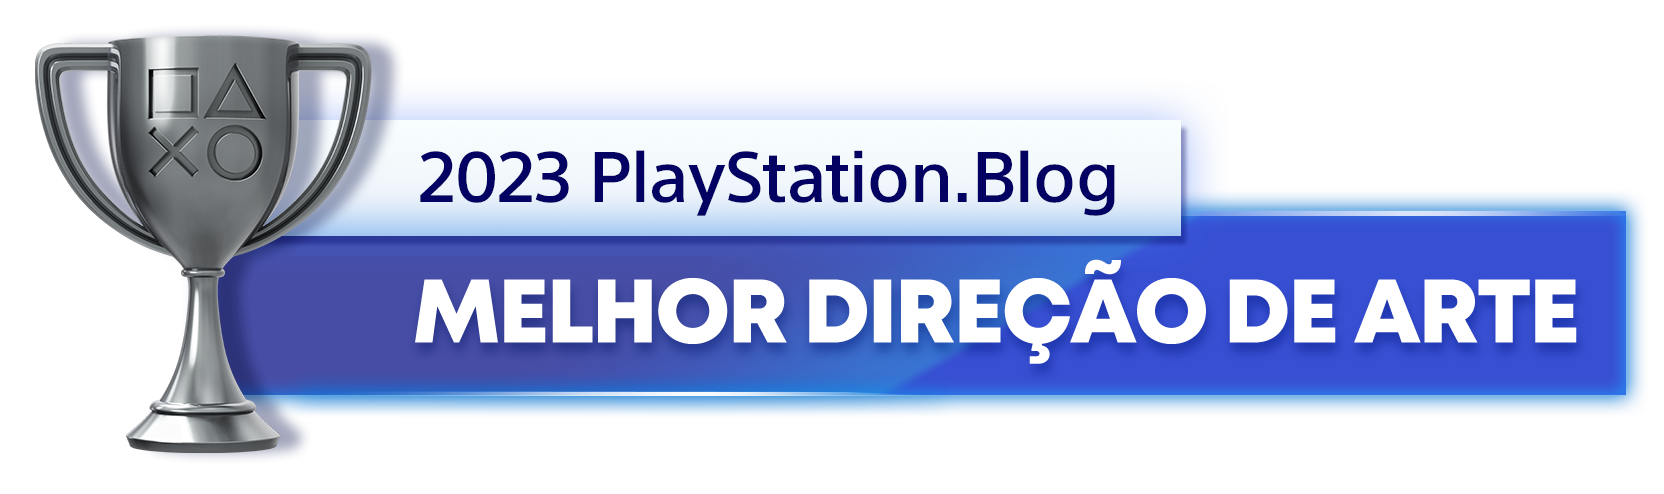  "Troféu de Prata para o vencedor da categoria Melhor Direção de Arte de 2023 do PlayStation Blog"